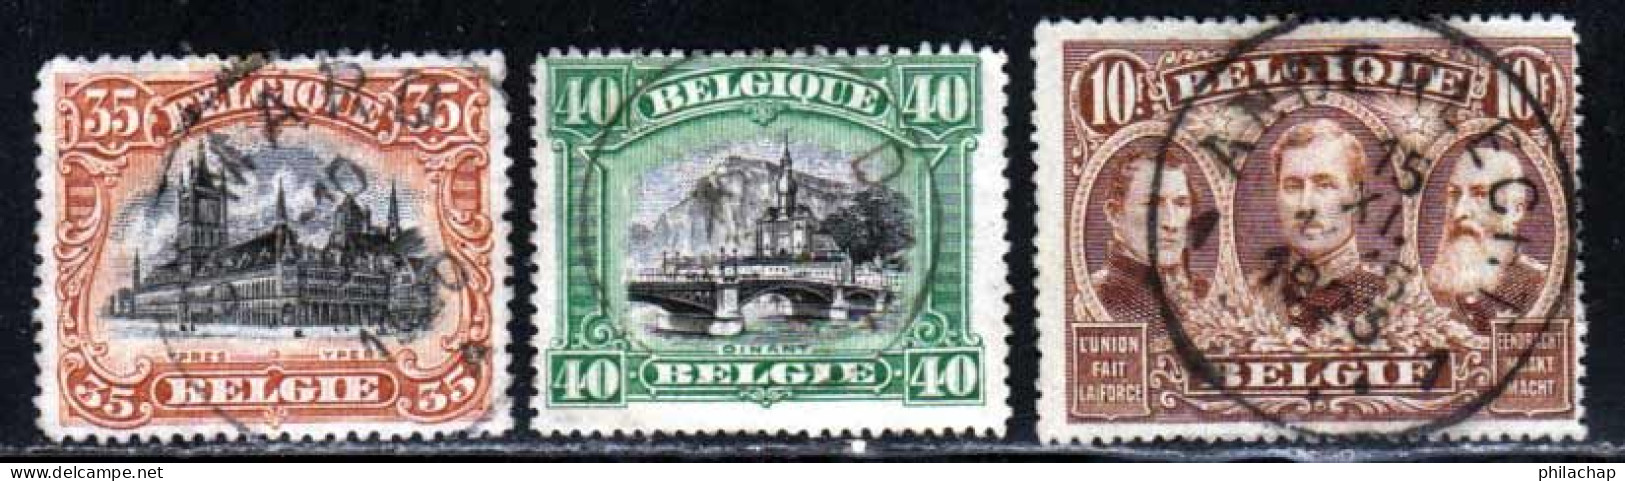 Belgique 1915 Yvert 142 - 143 - 149 (o) B Oblitere(s) - 1915-1920 Albert I